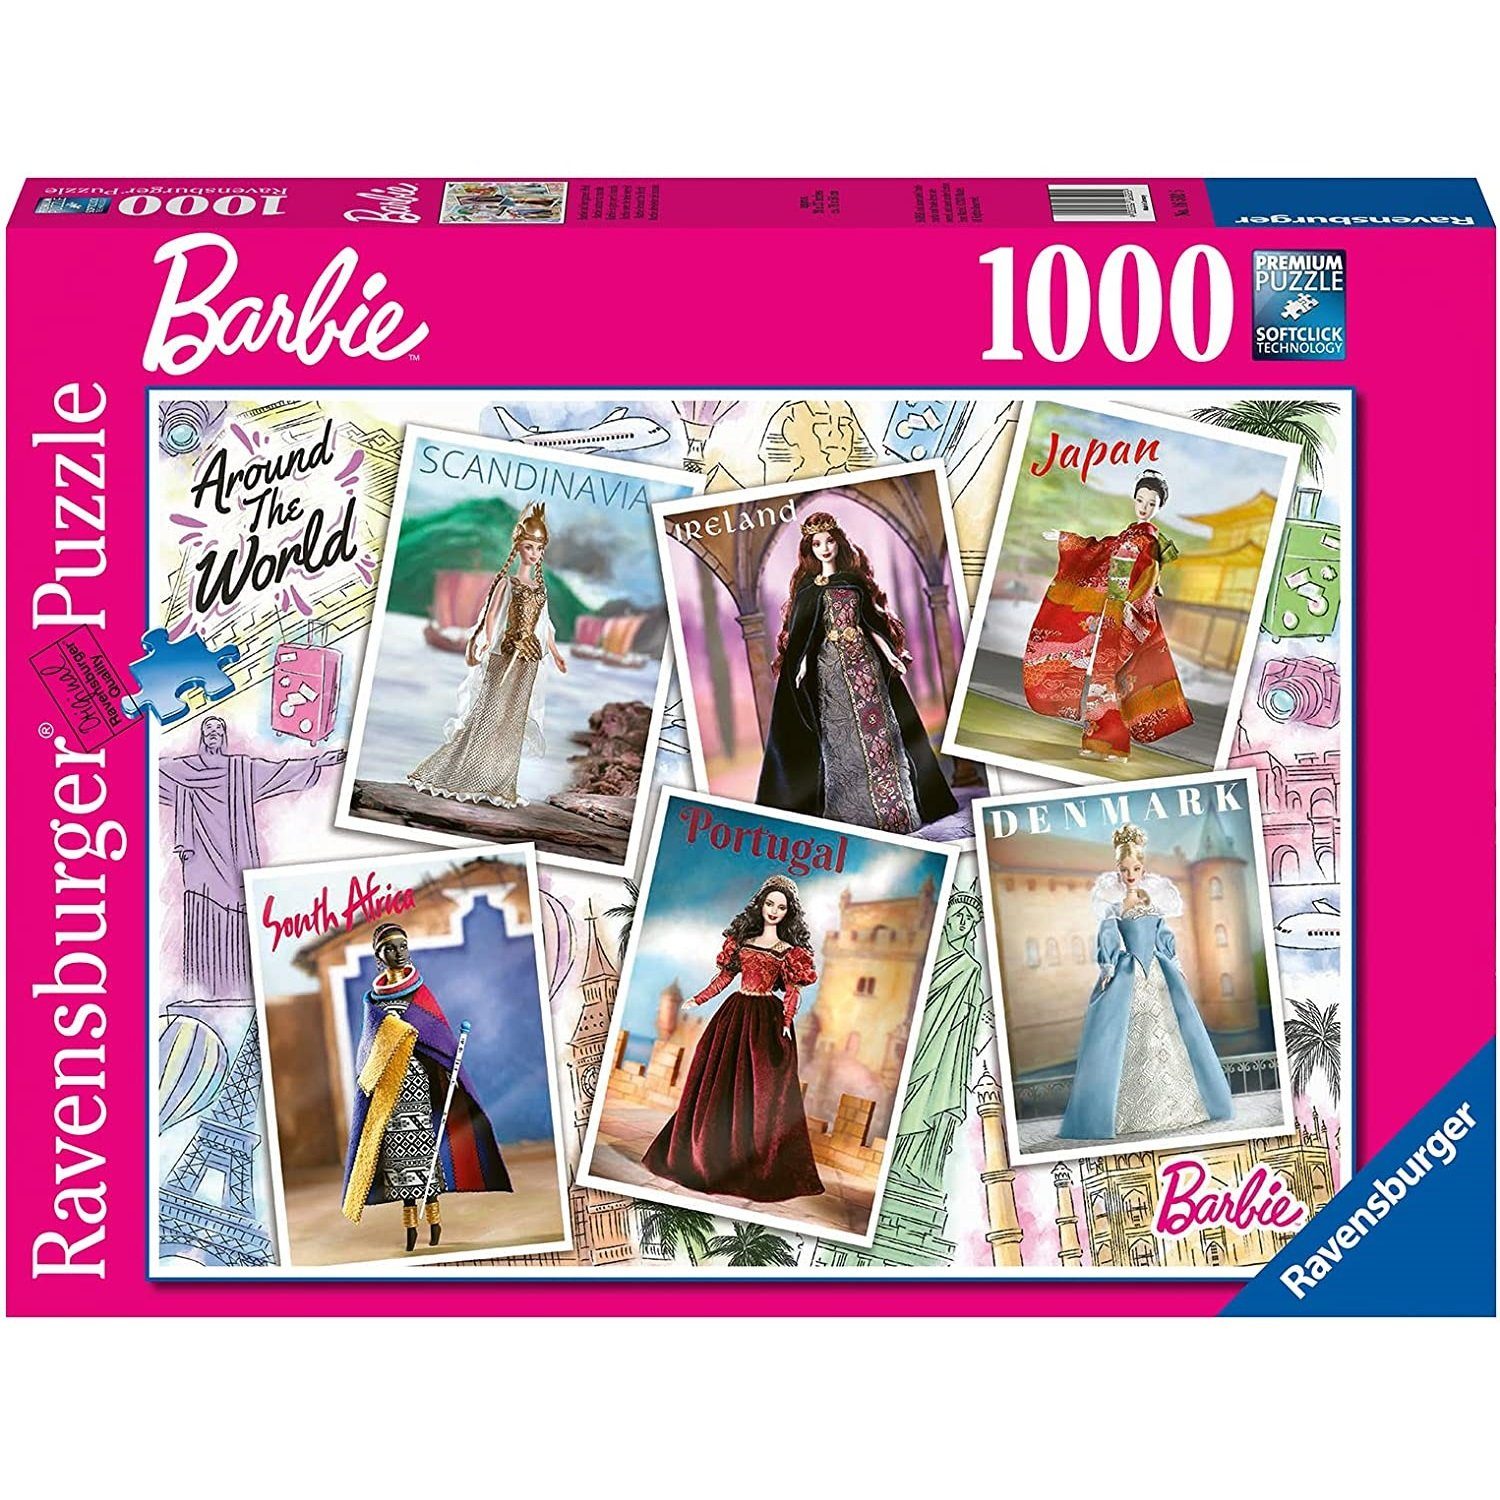 auf der Welt, Ravensburger 1000 Puzzleteile, Puzzle Puzzle Ravensburger - Teile Barbie ganzen